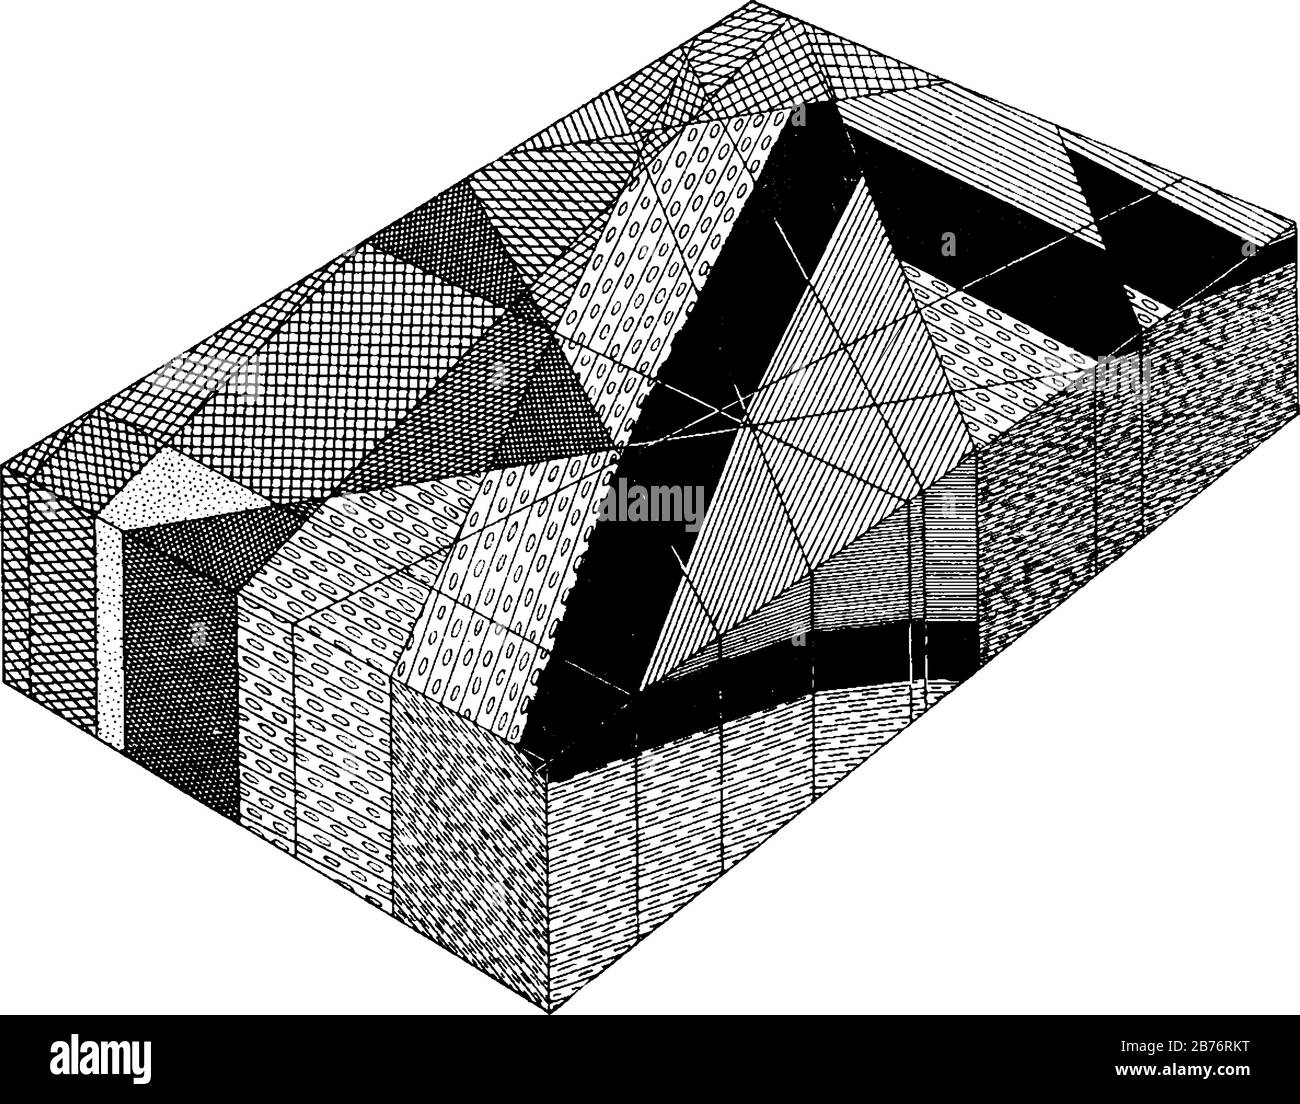 Mostra la struttura dedotta in prossimità del triangolo. Conglomerato di Arkose: Linee ed ellissi; basalto anteriore: Aree nere, disegno di linea vintage Illustrazione Vettoriale